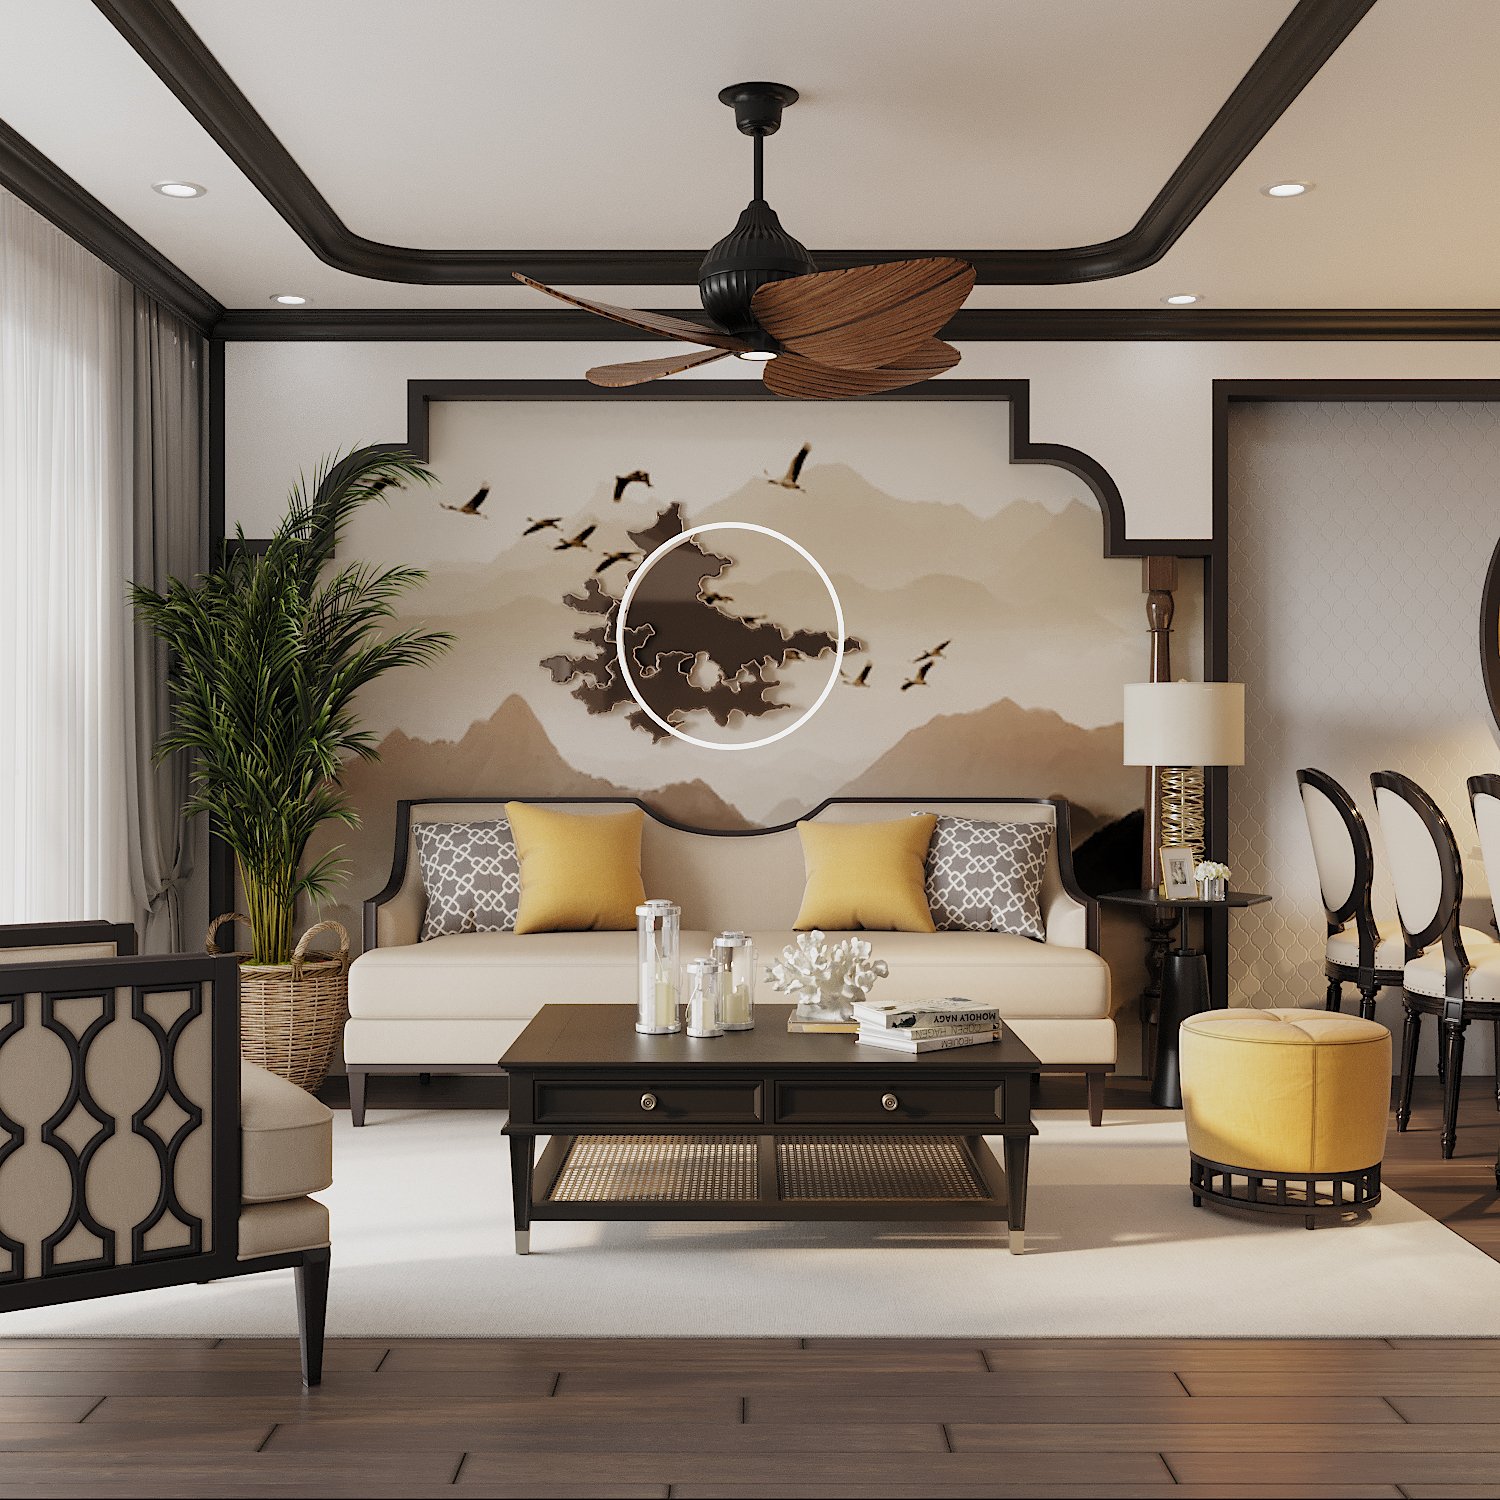 Không gian phòng khách căn hộ đậm chất Indochine với đường nét nội thất và tạo điểm nhấn cách trang trí mang hơi hướng cổ điển, truyền thống.